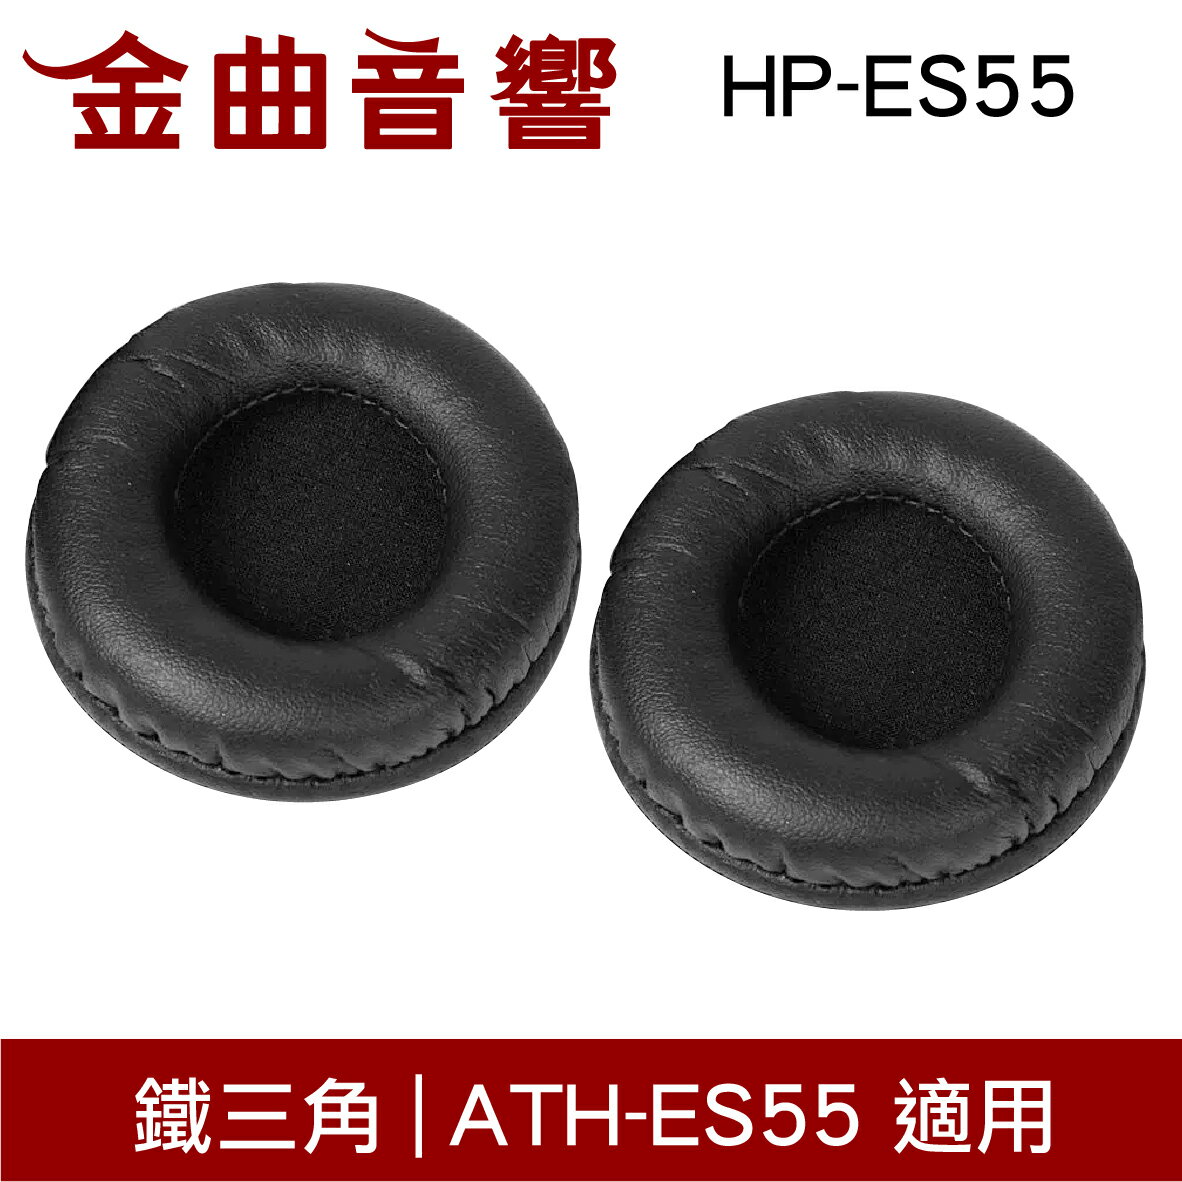 鐵三角 HP-ES55 替換耳罩 一對 ATH-ES55 適用 | 金曲音響